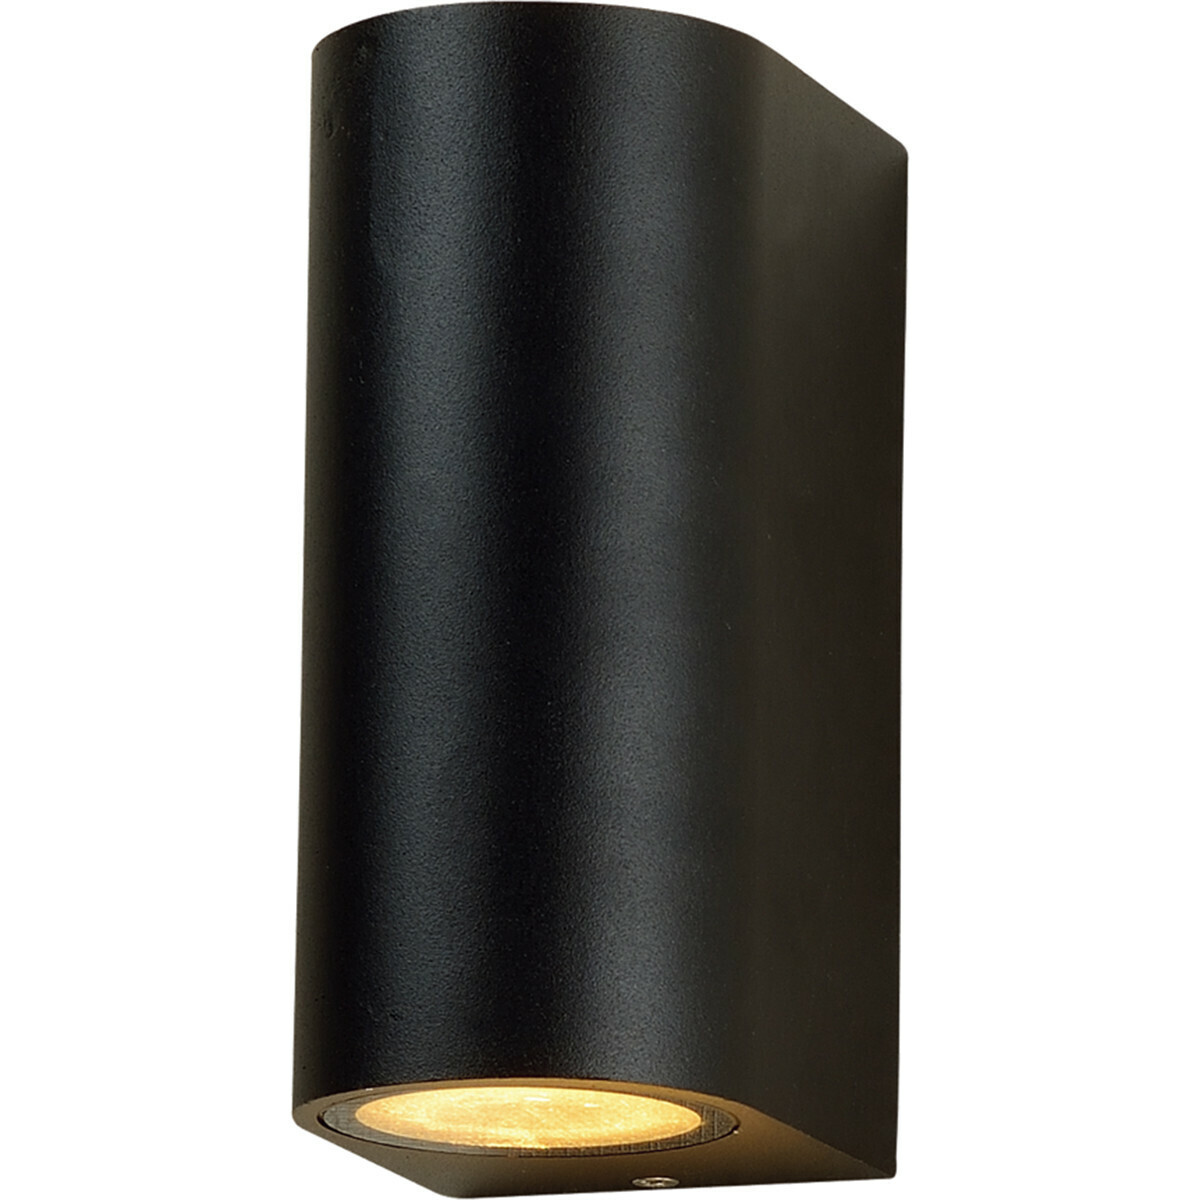 BES LED LED Tuinverlichting - Buitenlamp - Prixa Hoptron - Up en Down - GU10 Fitting - Rond - Mat Zwart - Aluminium - Philips - CorePro 840 36D - 5W - Natuurlijk Wit 4000K - Dimbaar